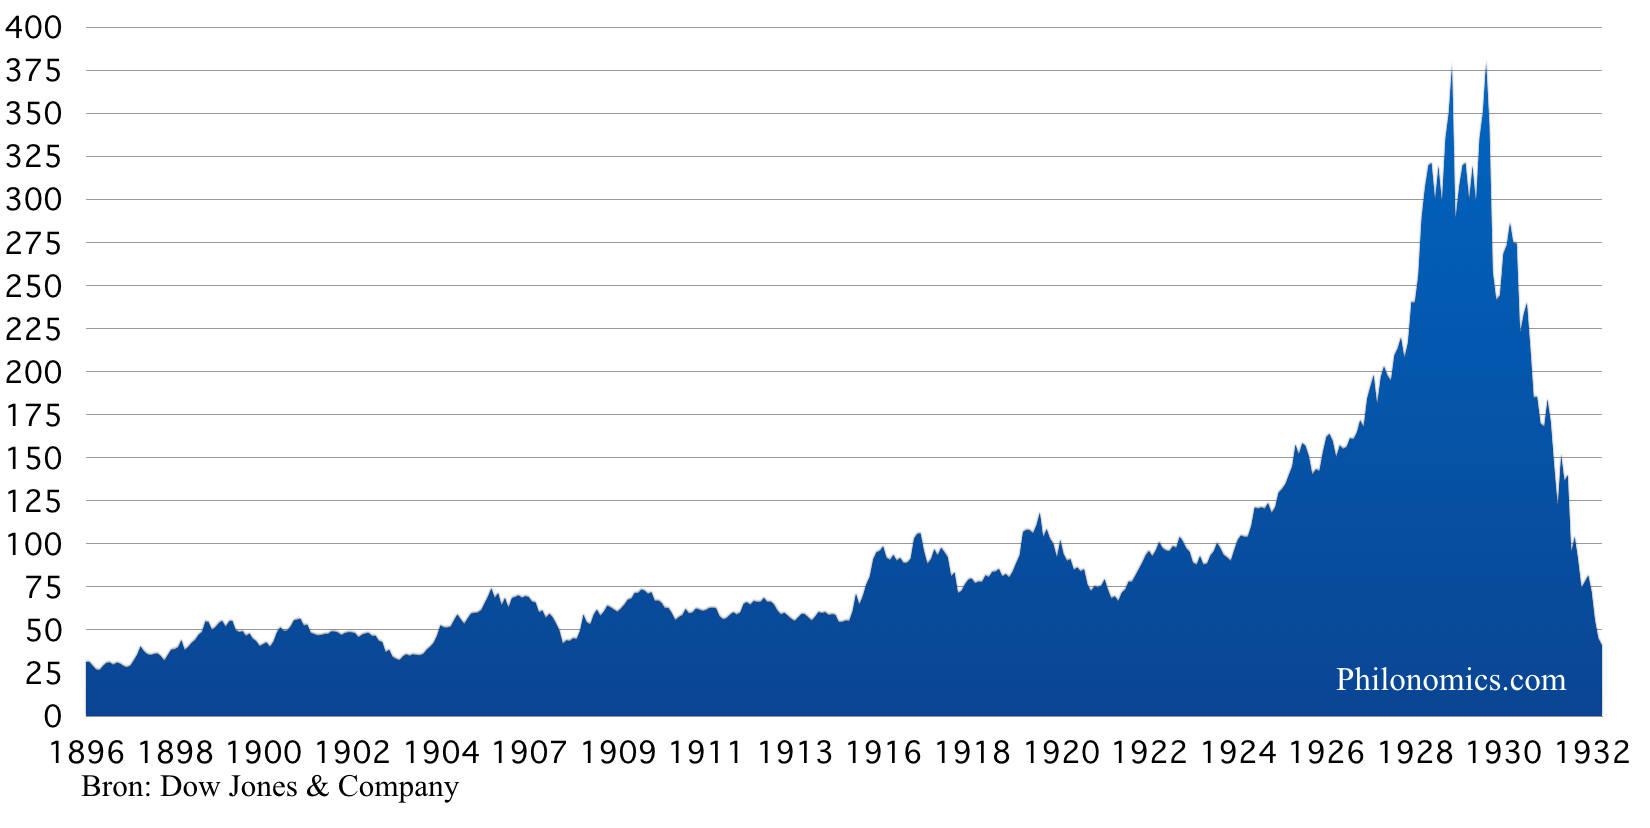 [7] Dow Jones Industrial Average Index 1896-1932